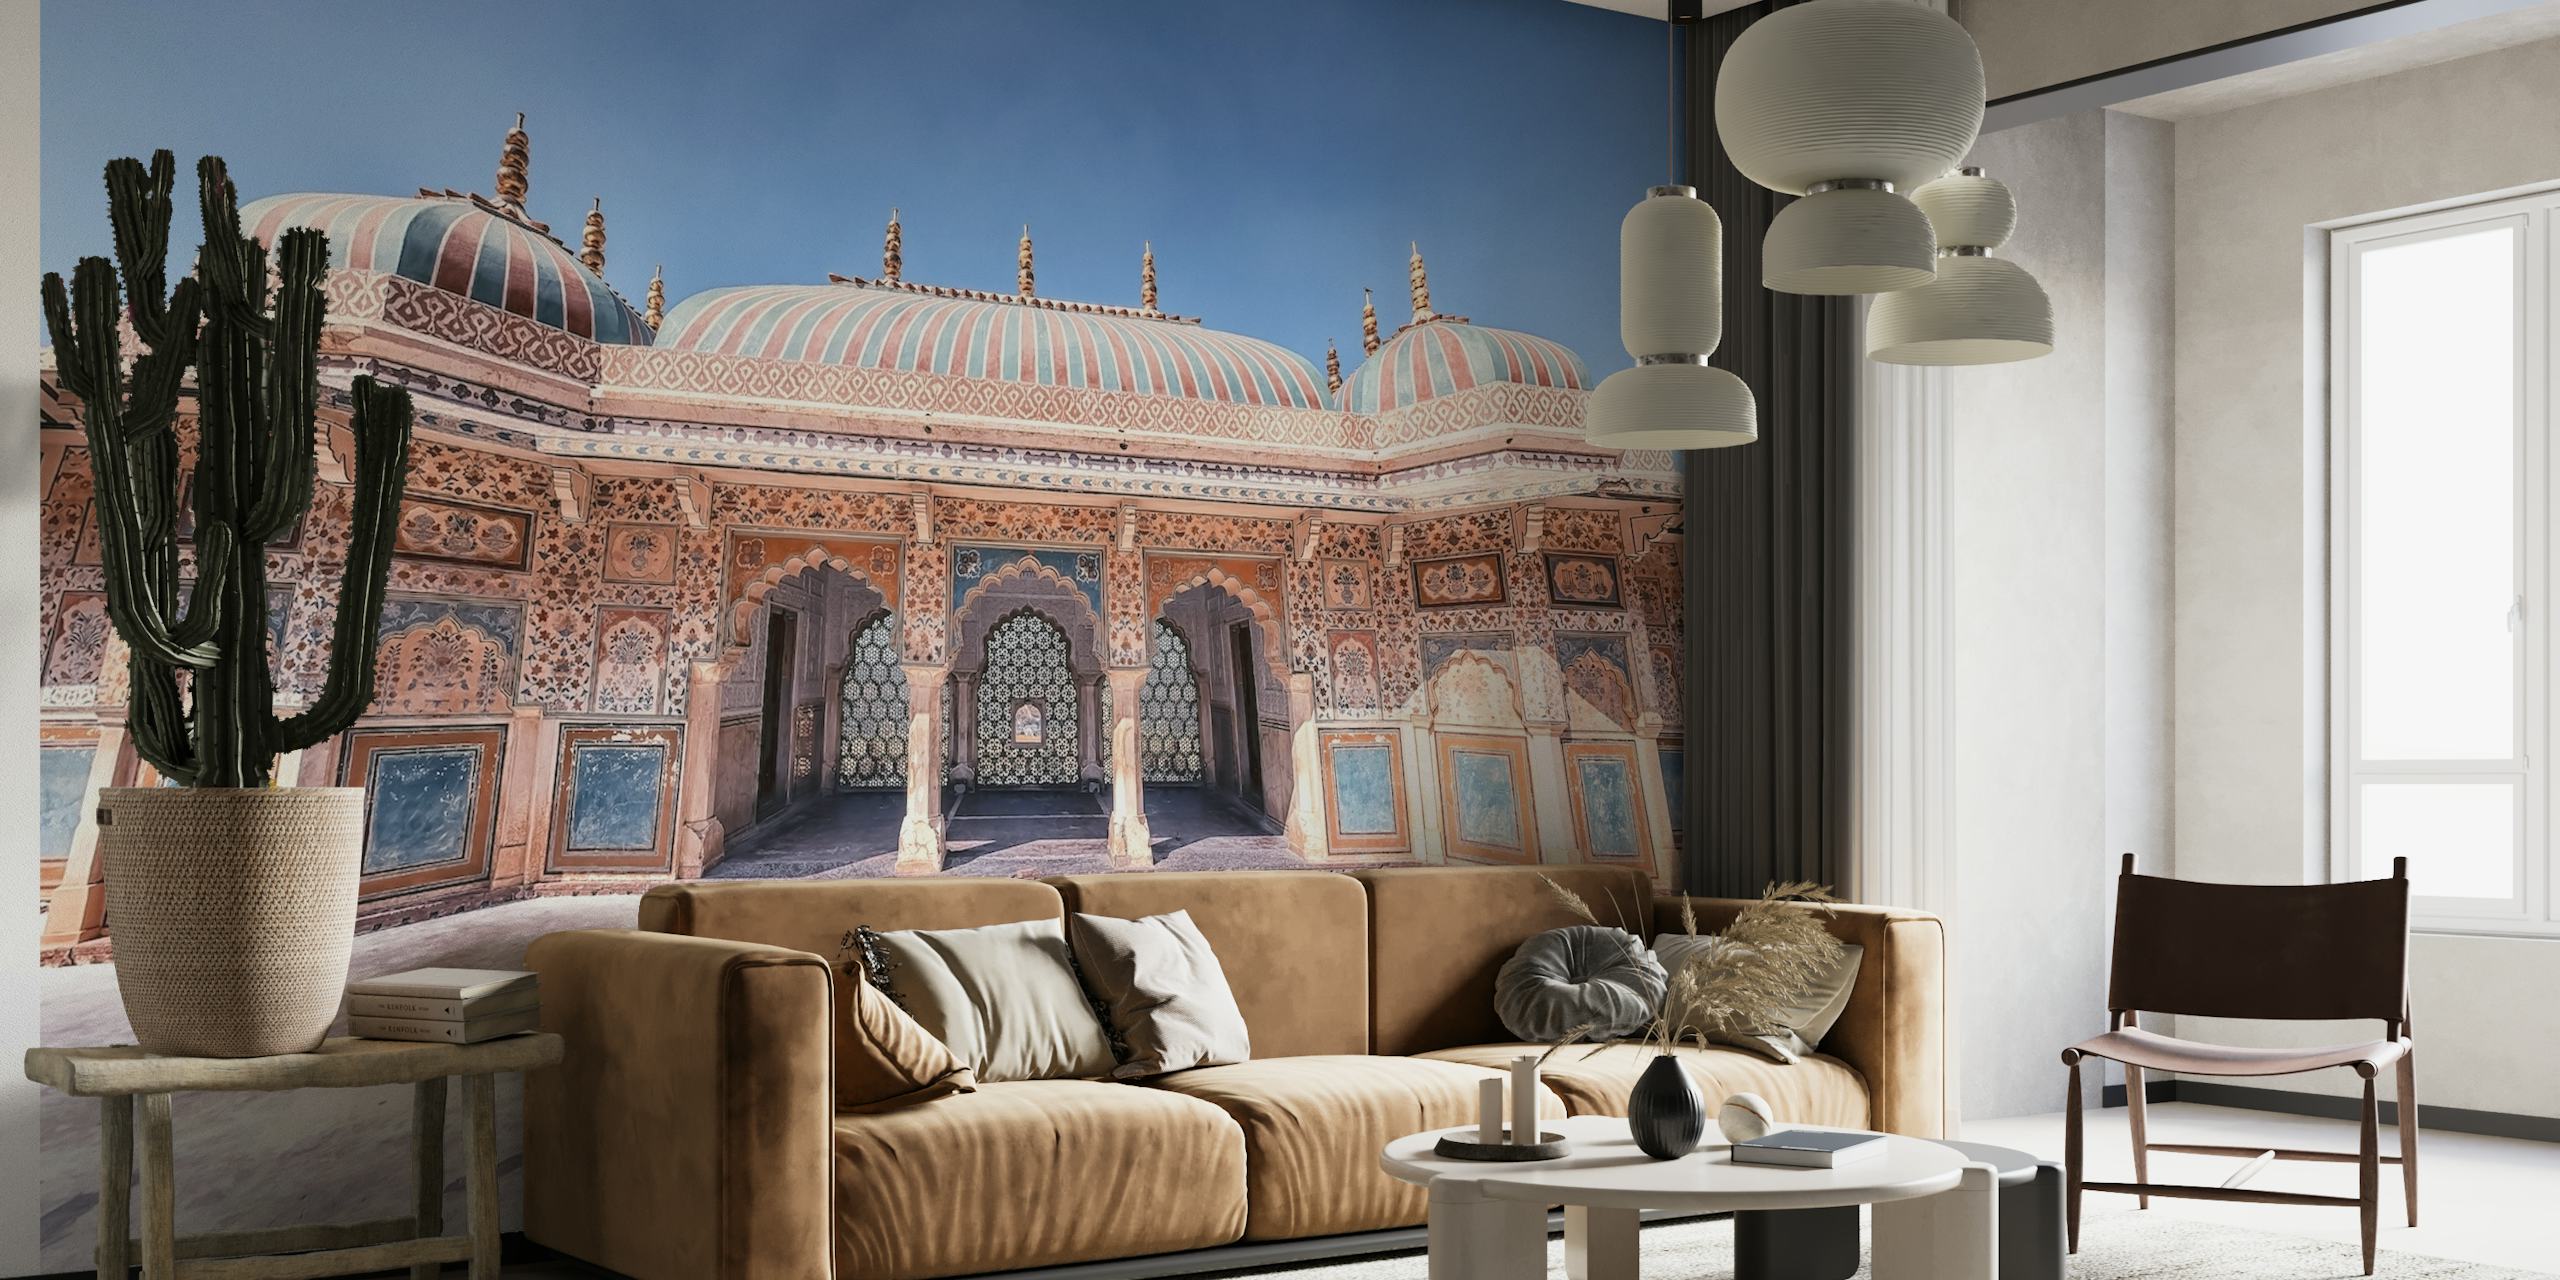 Amber Fort-vægmaleri, der viser den majestætiske indiske arkitektur og indviklede paladsdetaljer